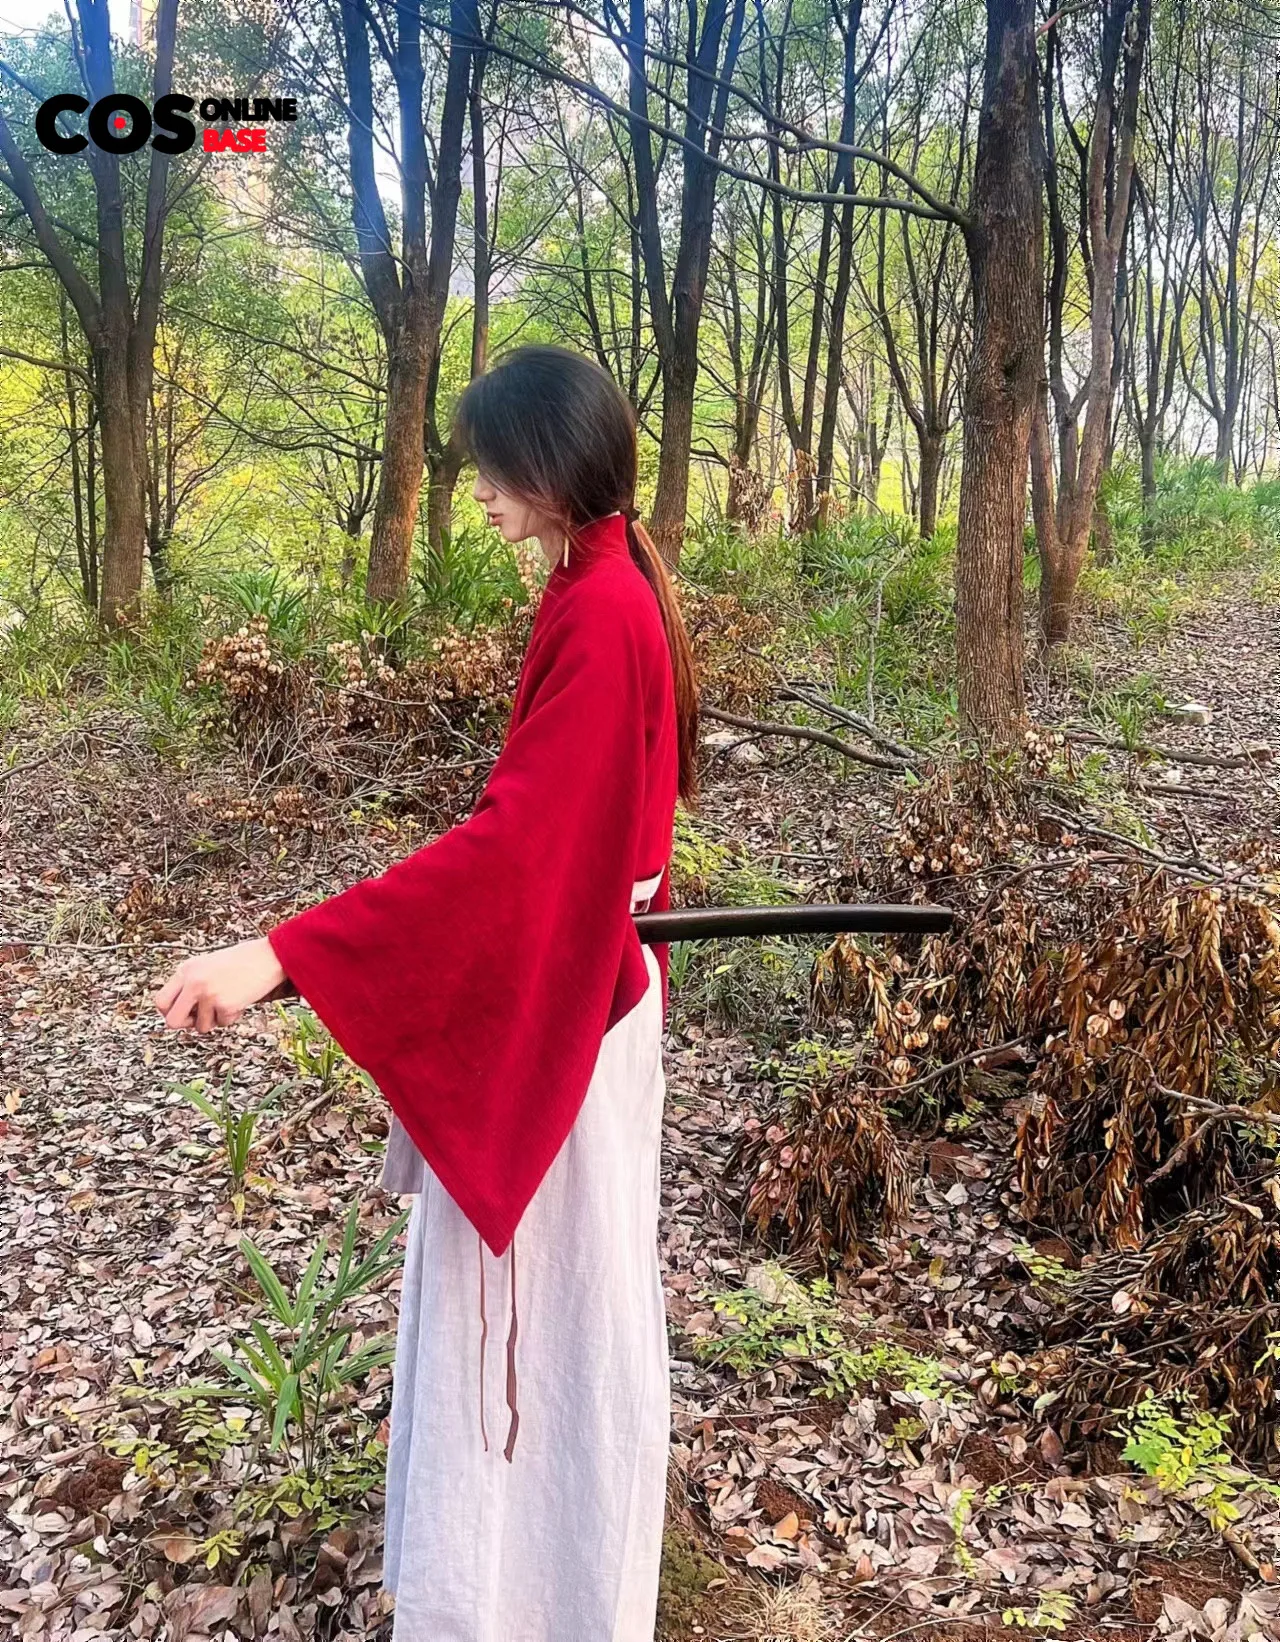 Rurouni Kenshin Himura Kenshin Red film Kimono Cosplay Costume - AliExpress